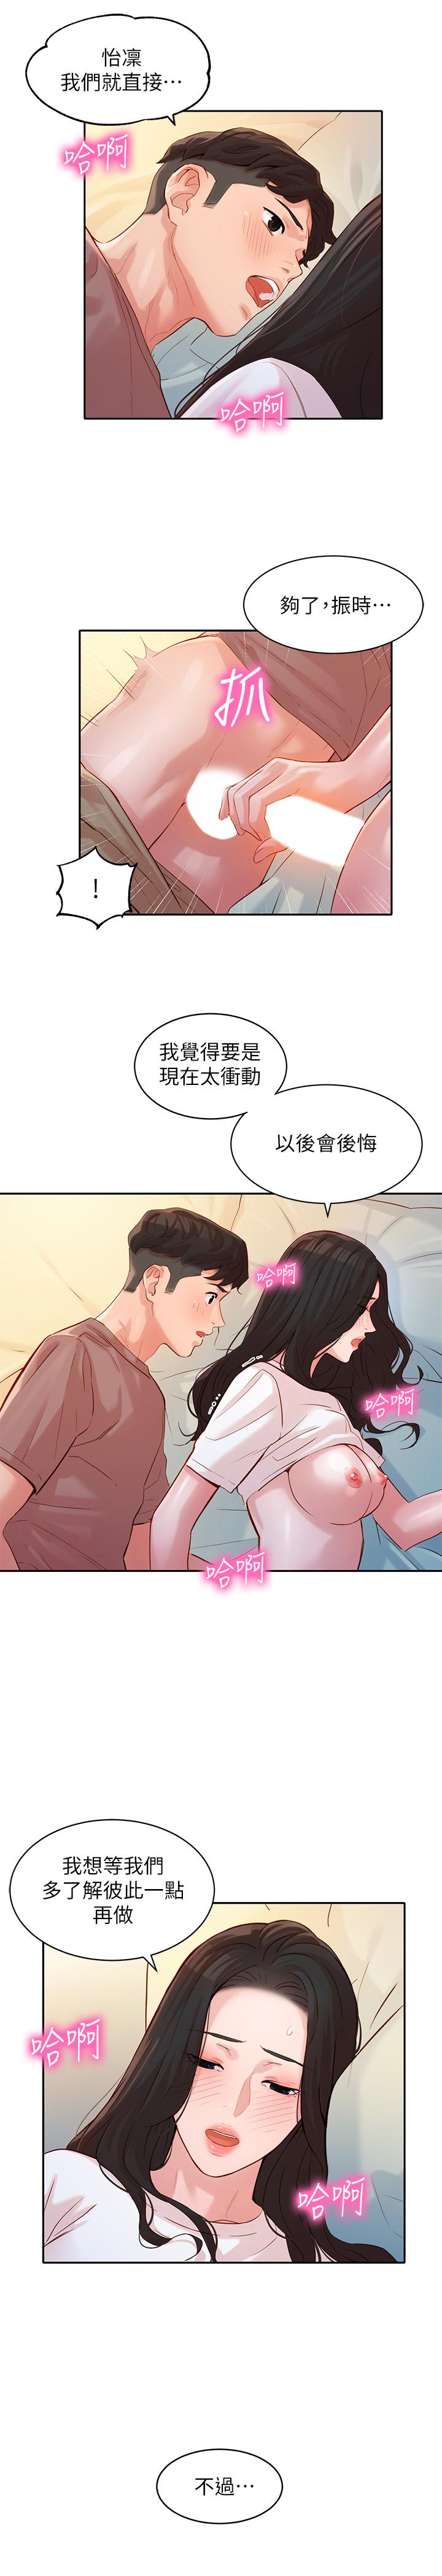 韩国污漫画 女神寫真 第17话-将欲望发洩在双臀之间 20